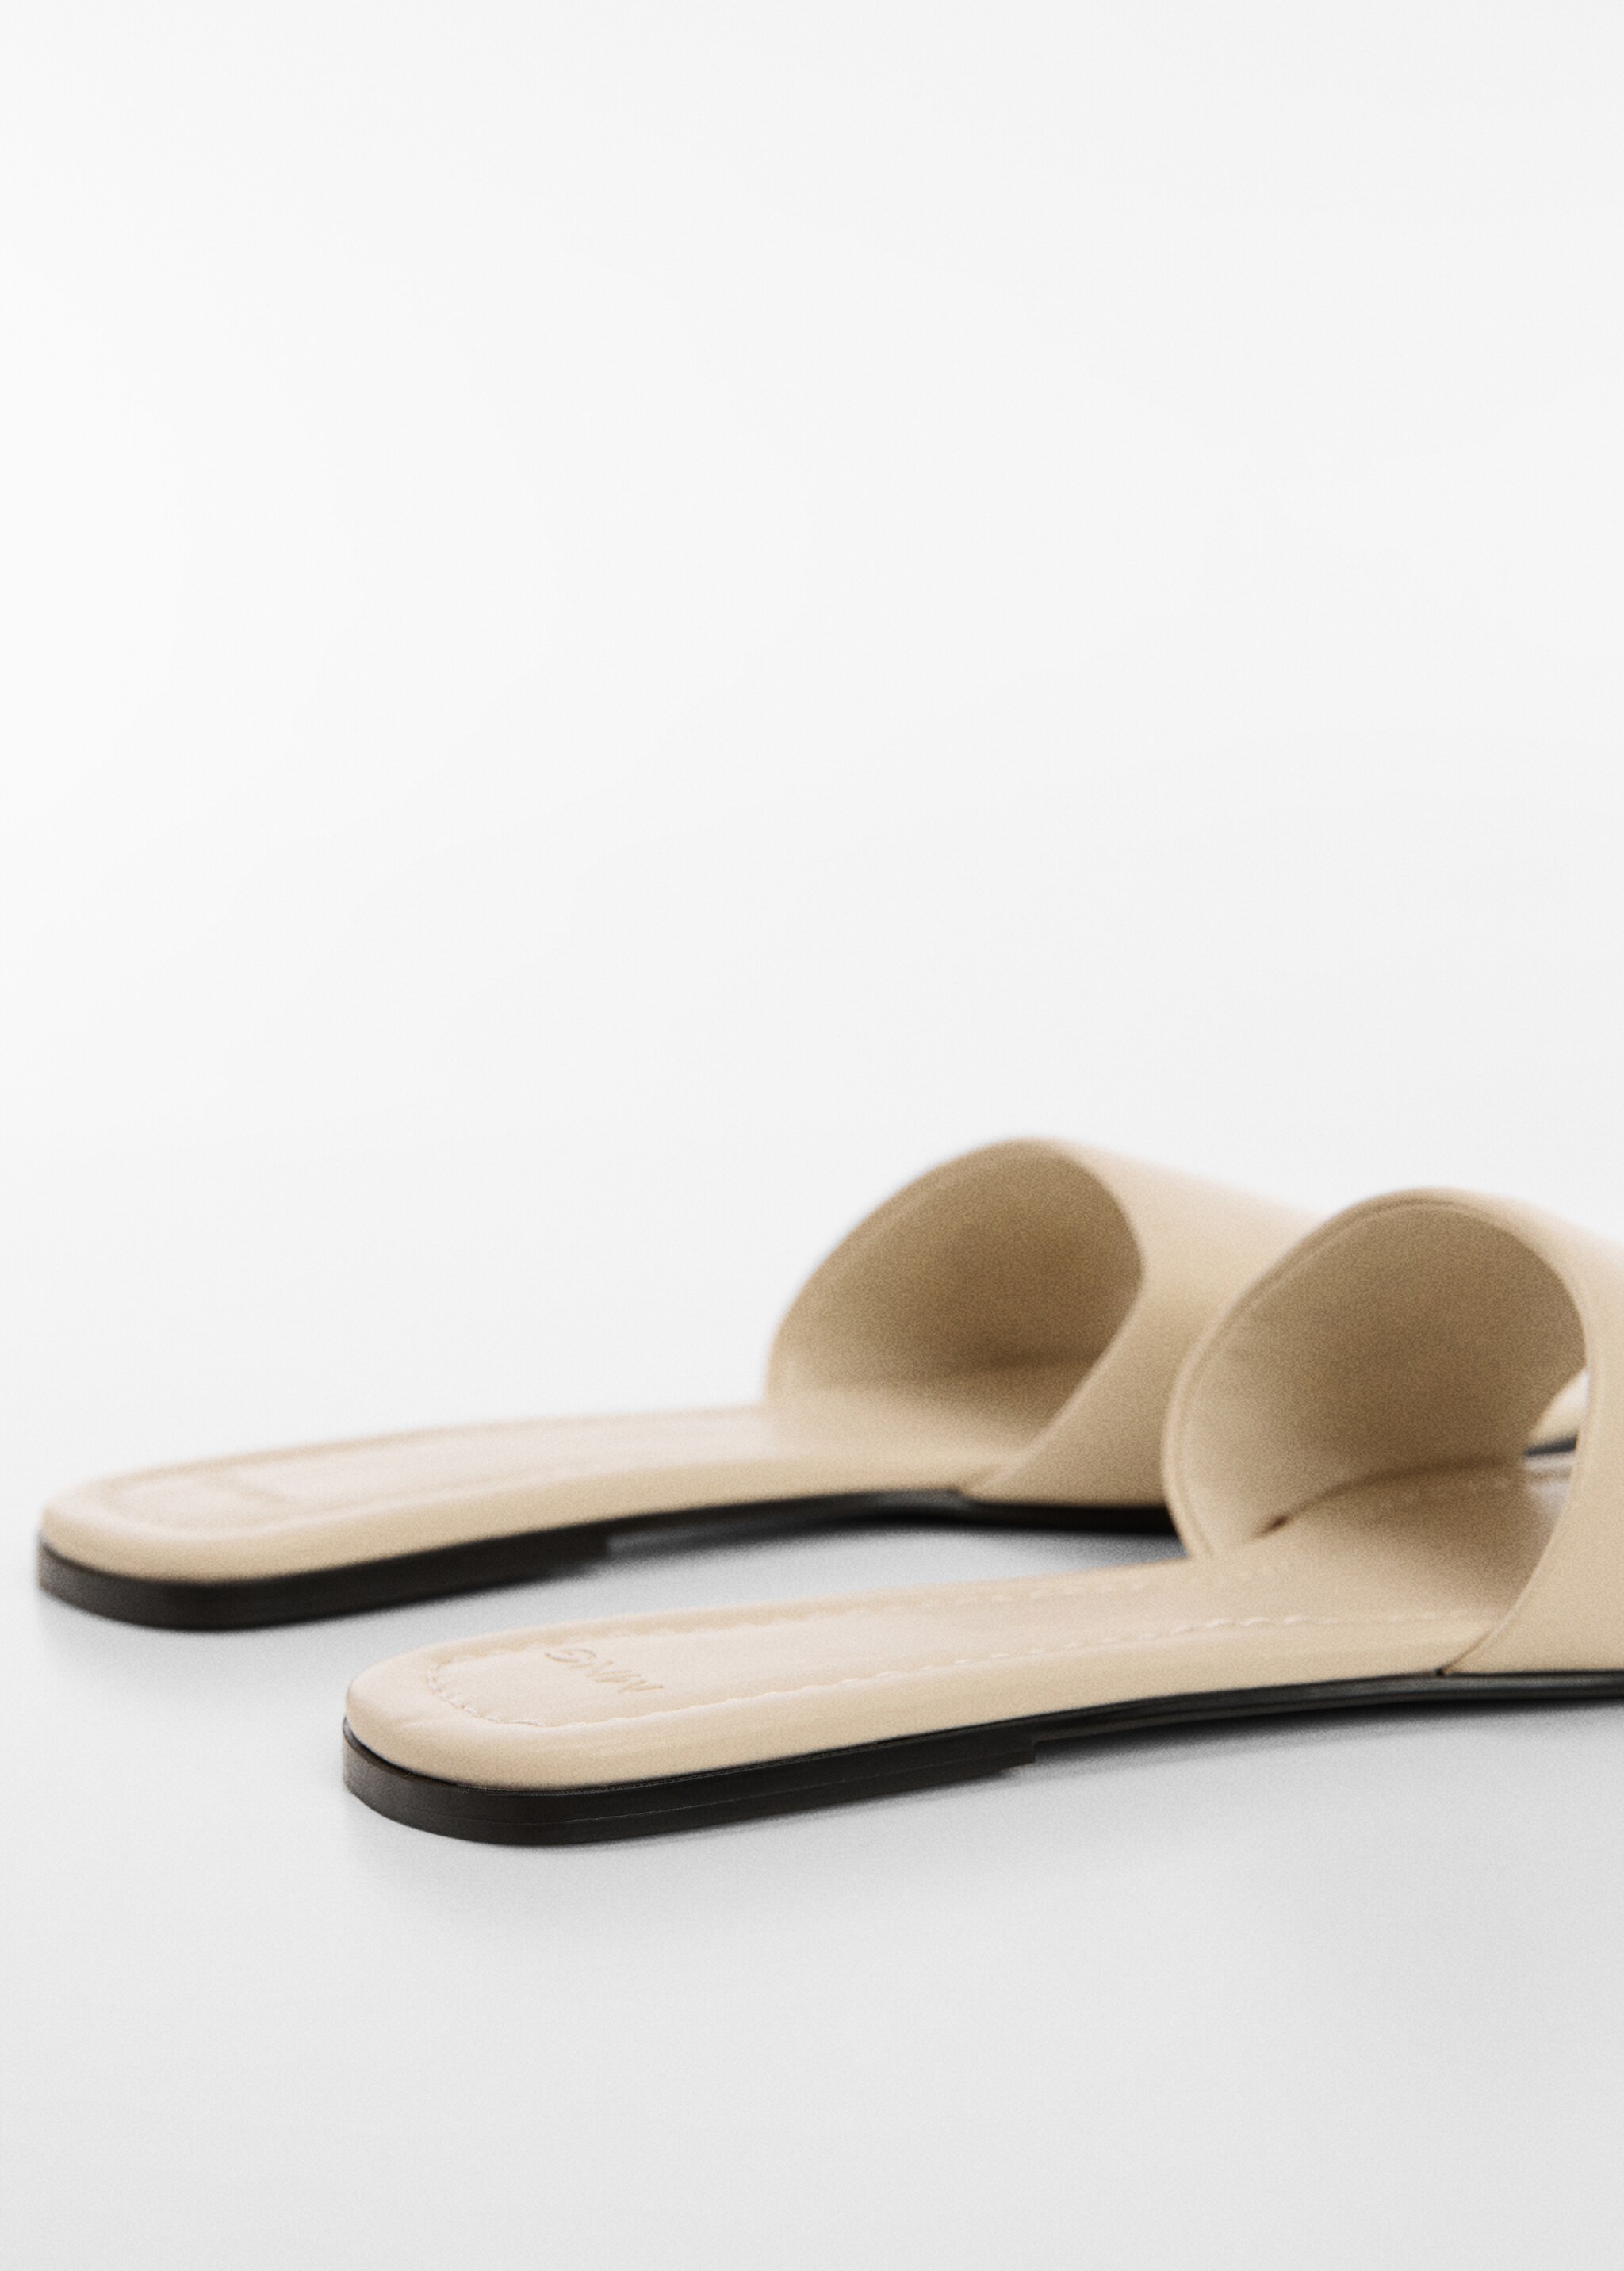 Кожаные сандалии с ремешком - Деталь изделия 1